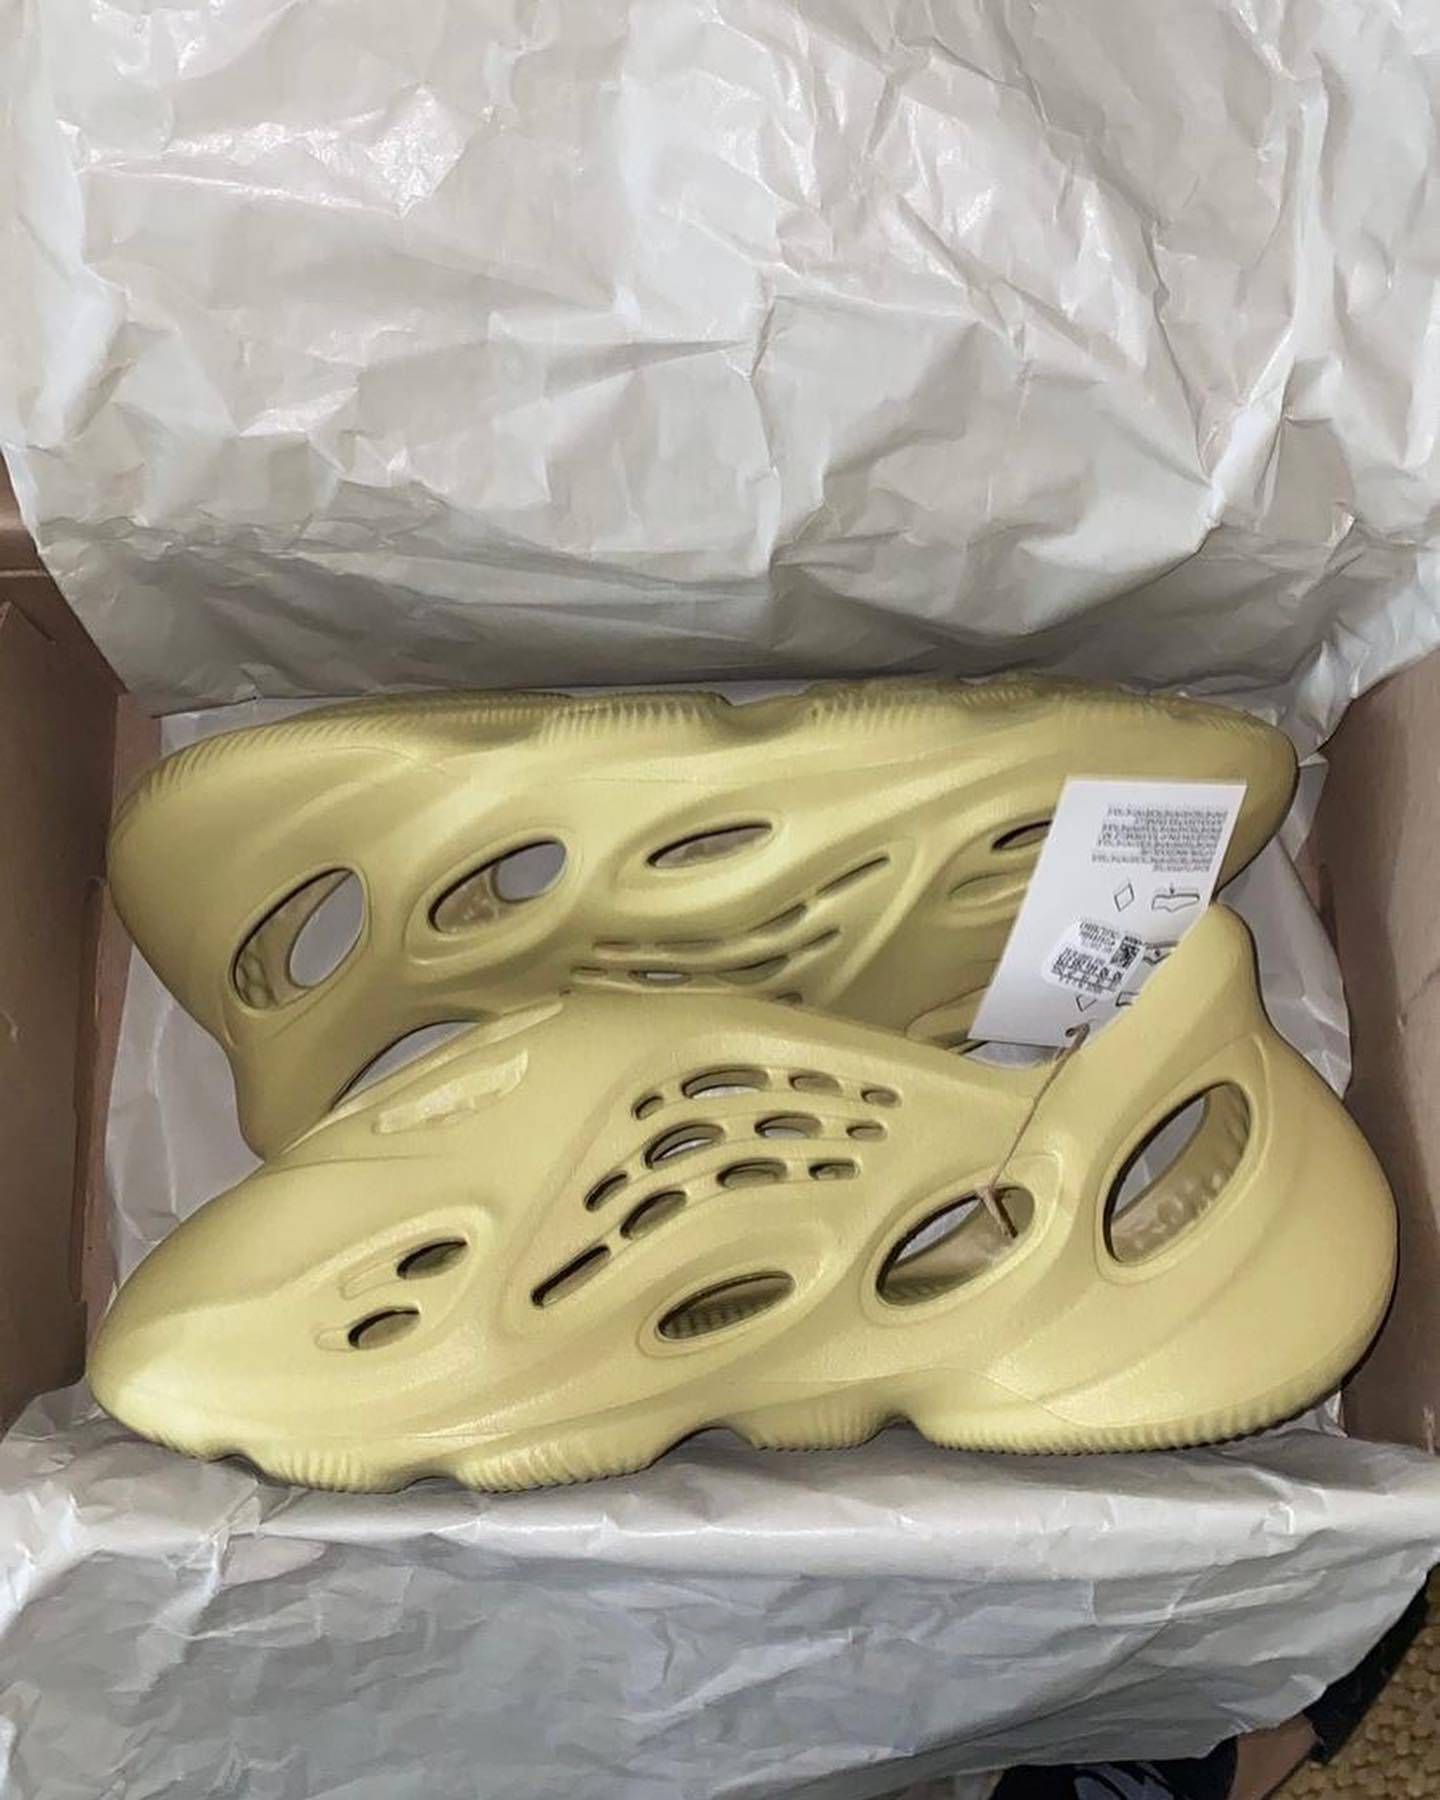 2022新款Yeezy Foam Runner “Sulfur” 硫磺色泡沫跑步鞋 正版细节照 上脚效果图_4